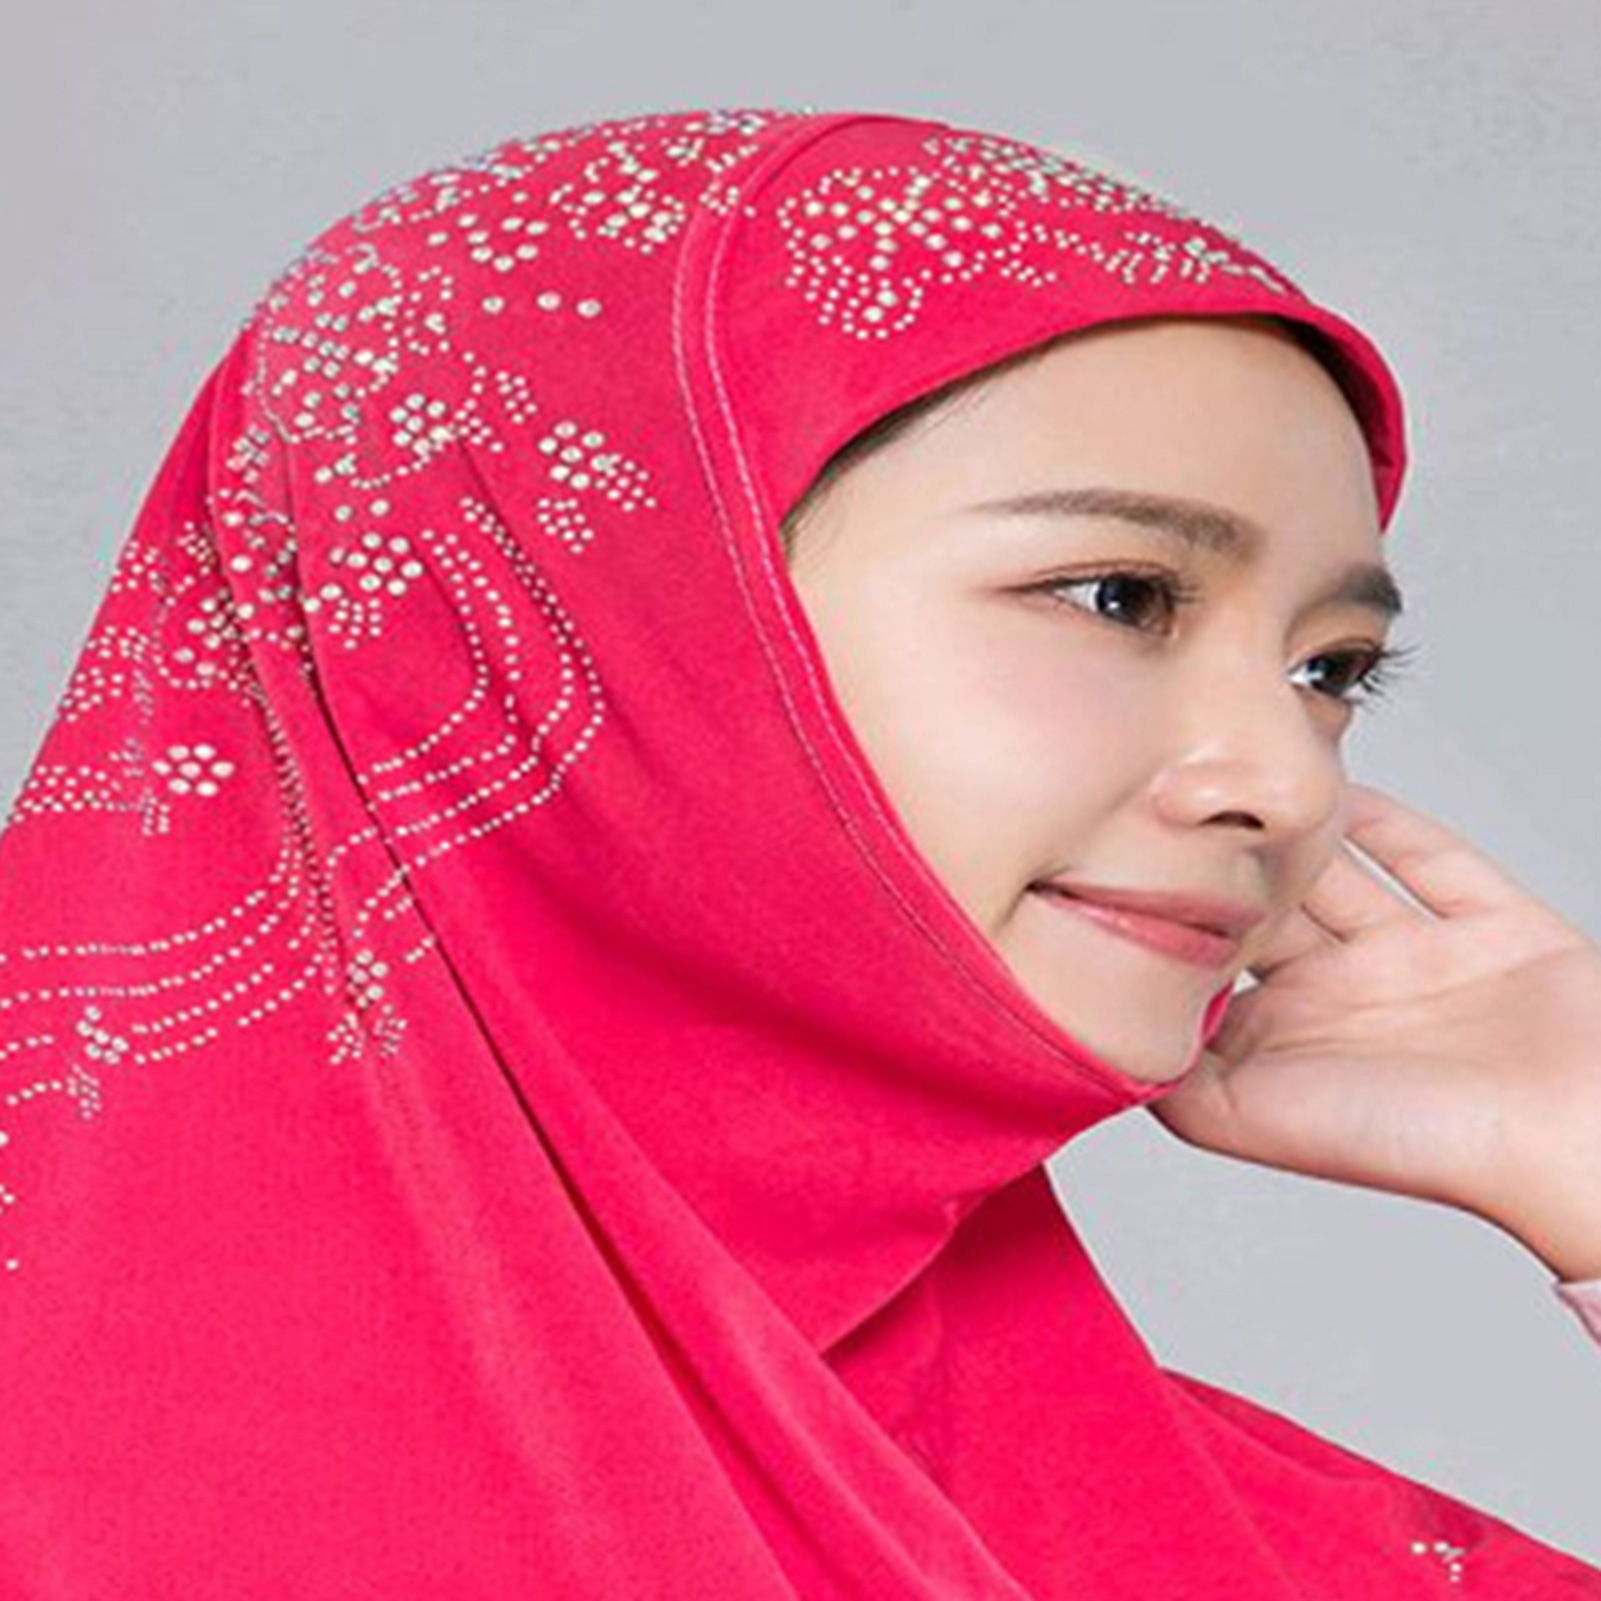 Muslim Women Scarves Wrapped Hijab Islamic Rhinestone Scarf Arab Headscarf  Shaw